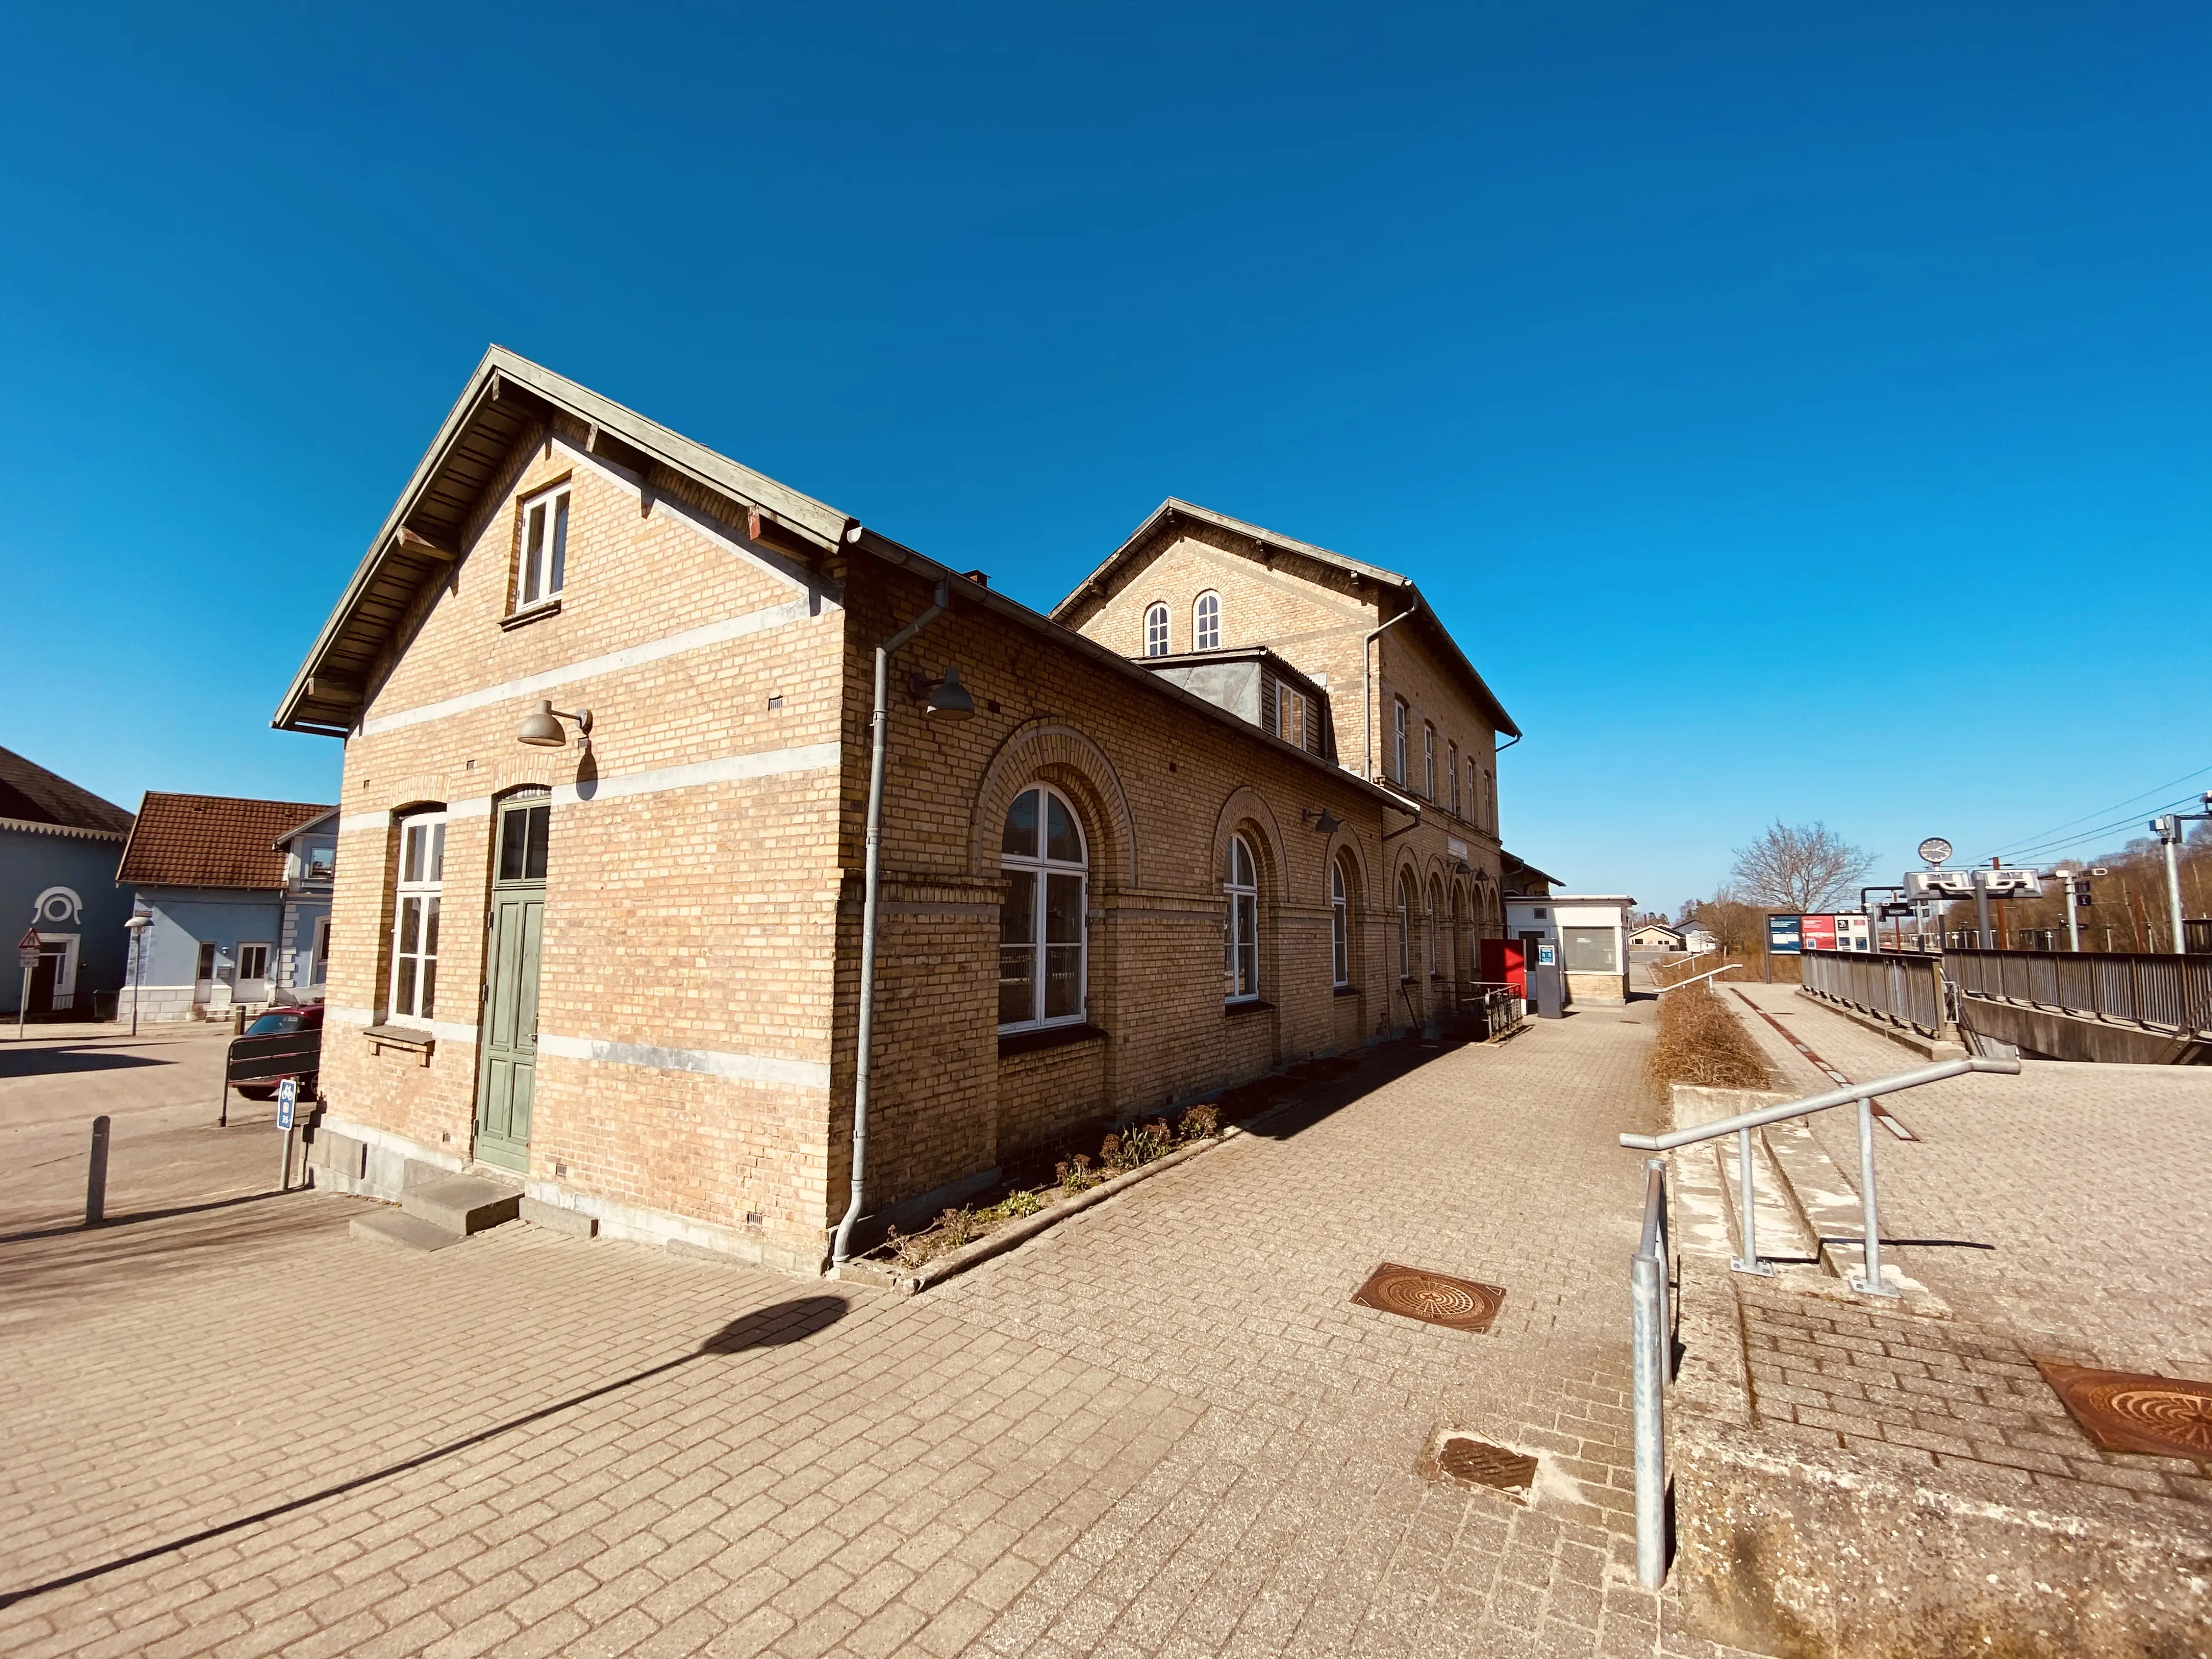 Billede af Lunderskov Station.